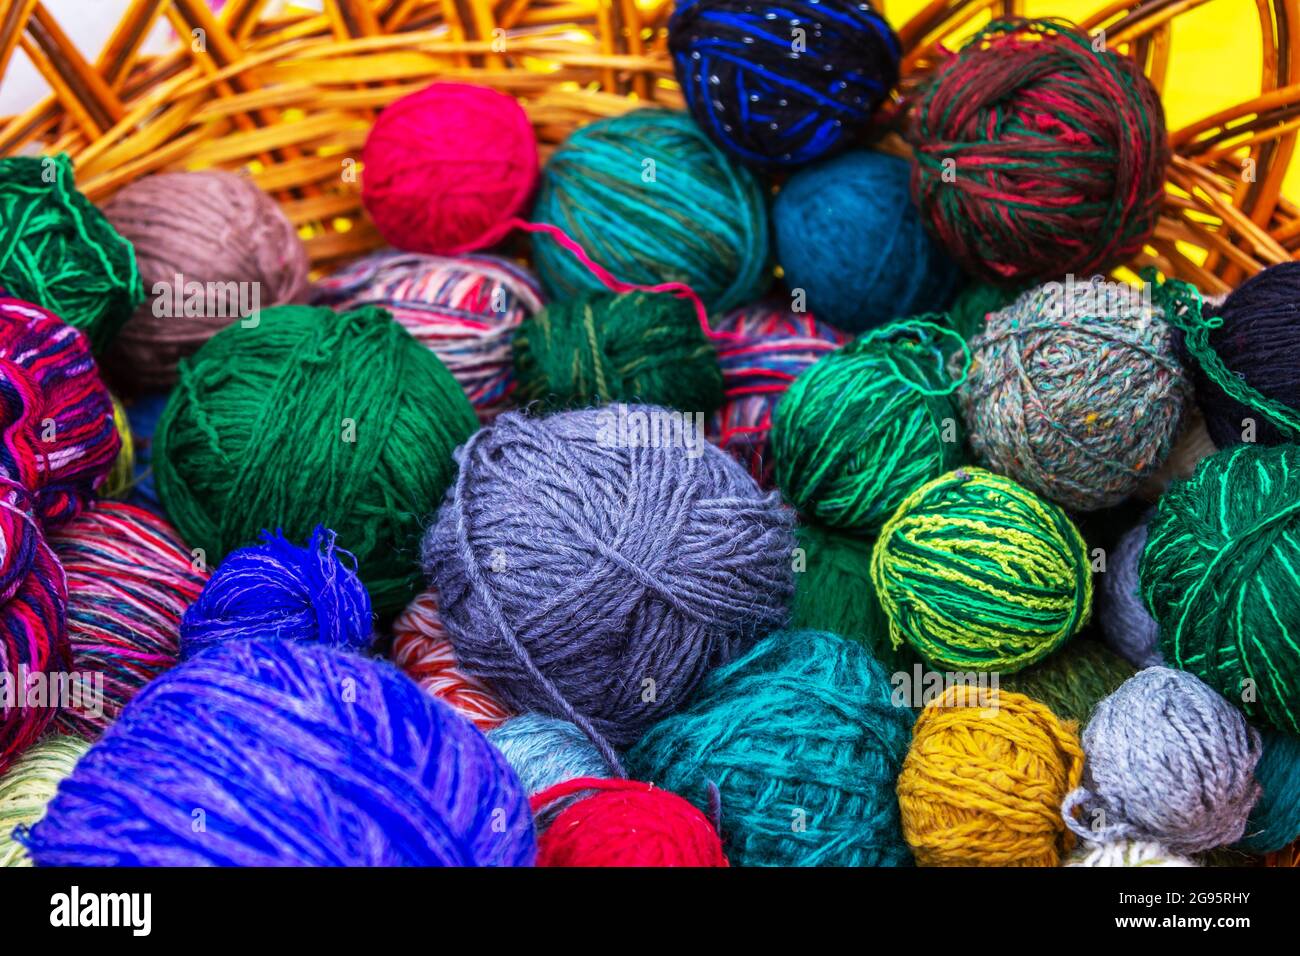 https://c8.alamy.com/comp/2G95RHY/colorful-knitting-yarn-balls-wool-and-cotton-thread-in-a-wicker-basket-2G95RHY.jpg